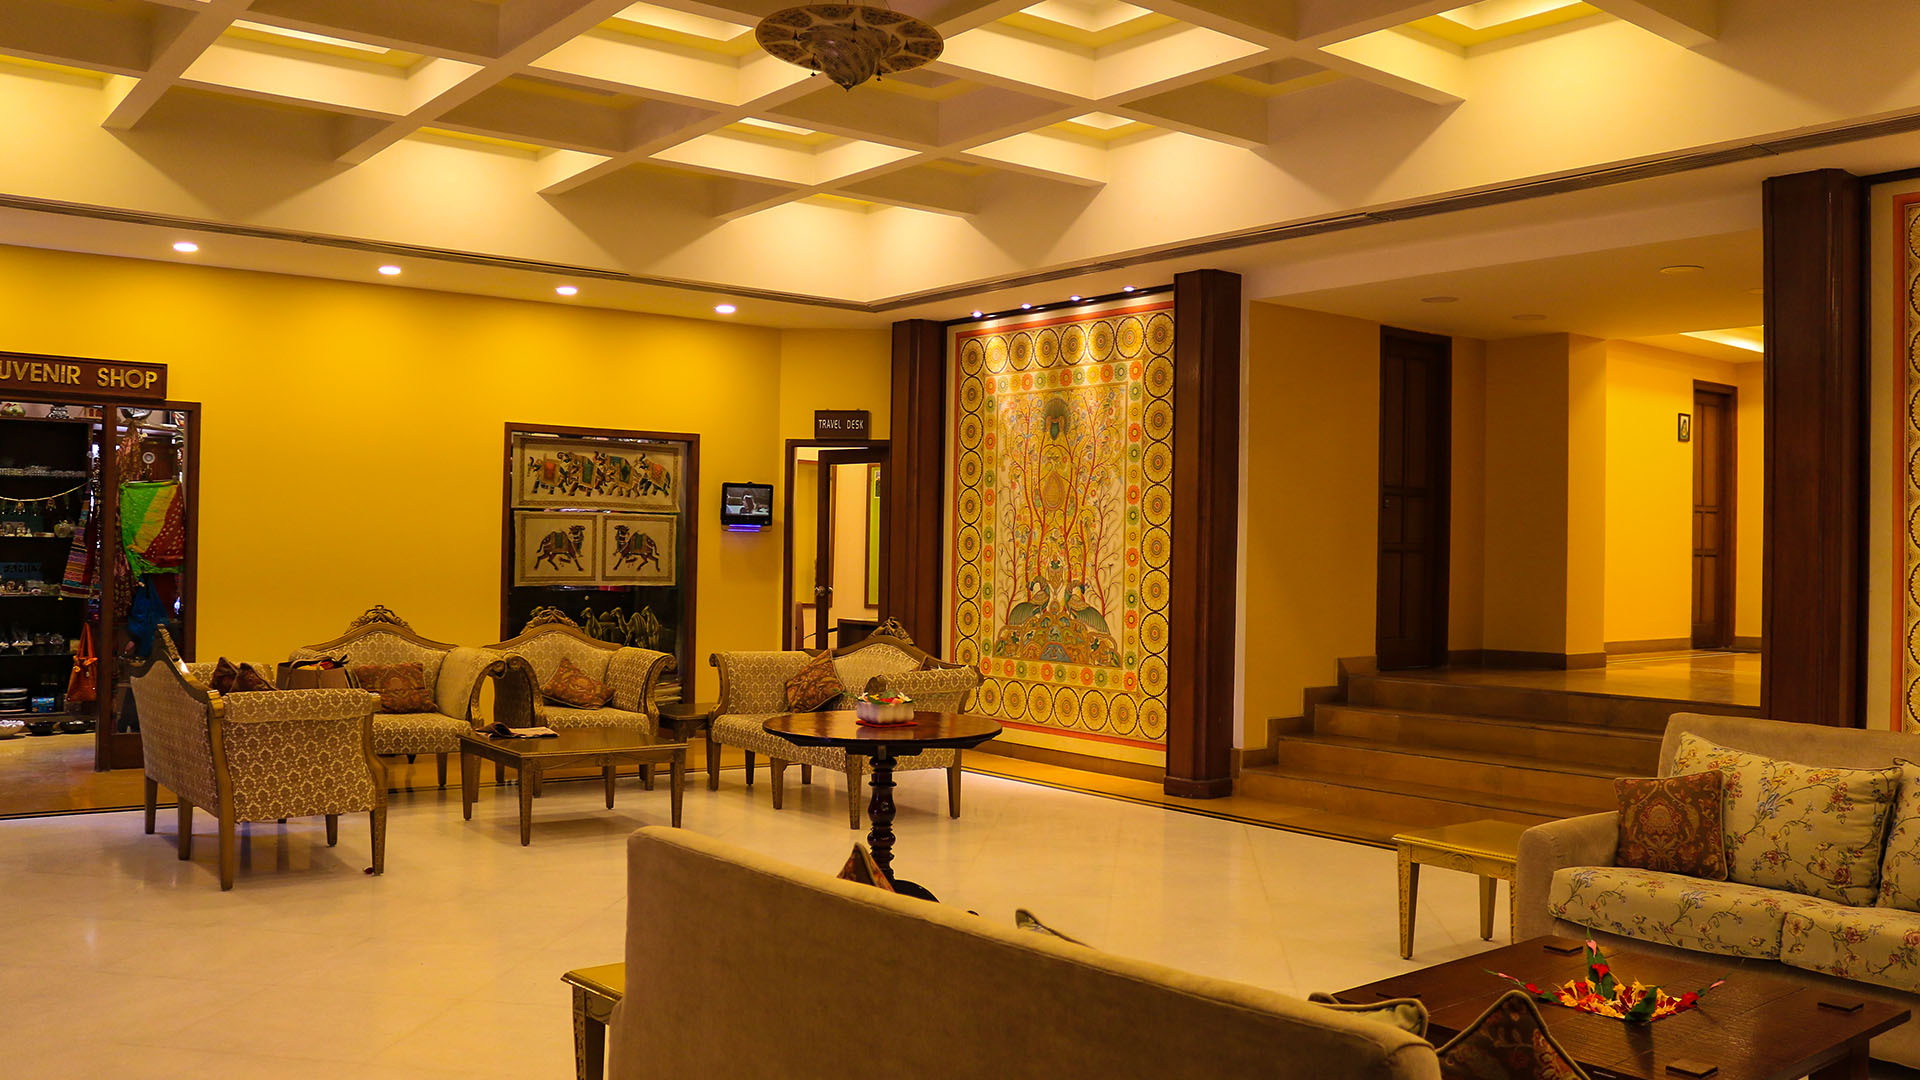 Club Mahindra Fort Resort Kumbhalgarh